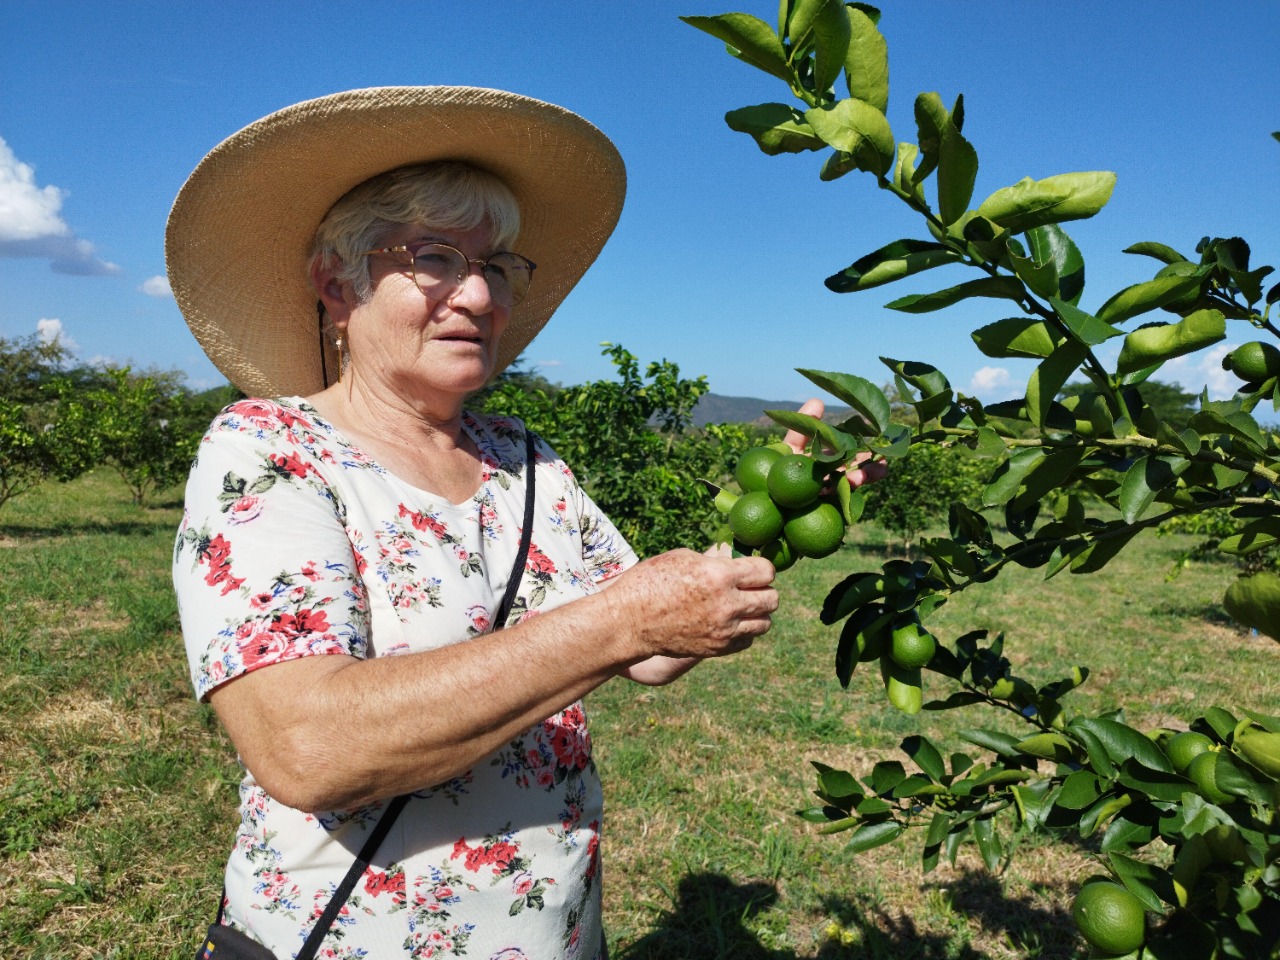 Familias productoras de limón en Yaguará le apuntan a exportar la fruta con apoyo del gobierno “Huila Crece”